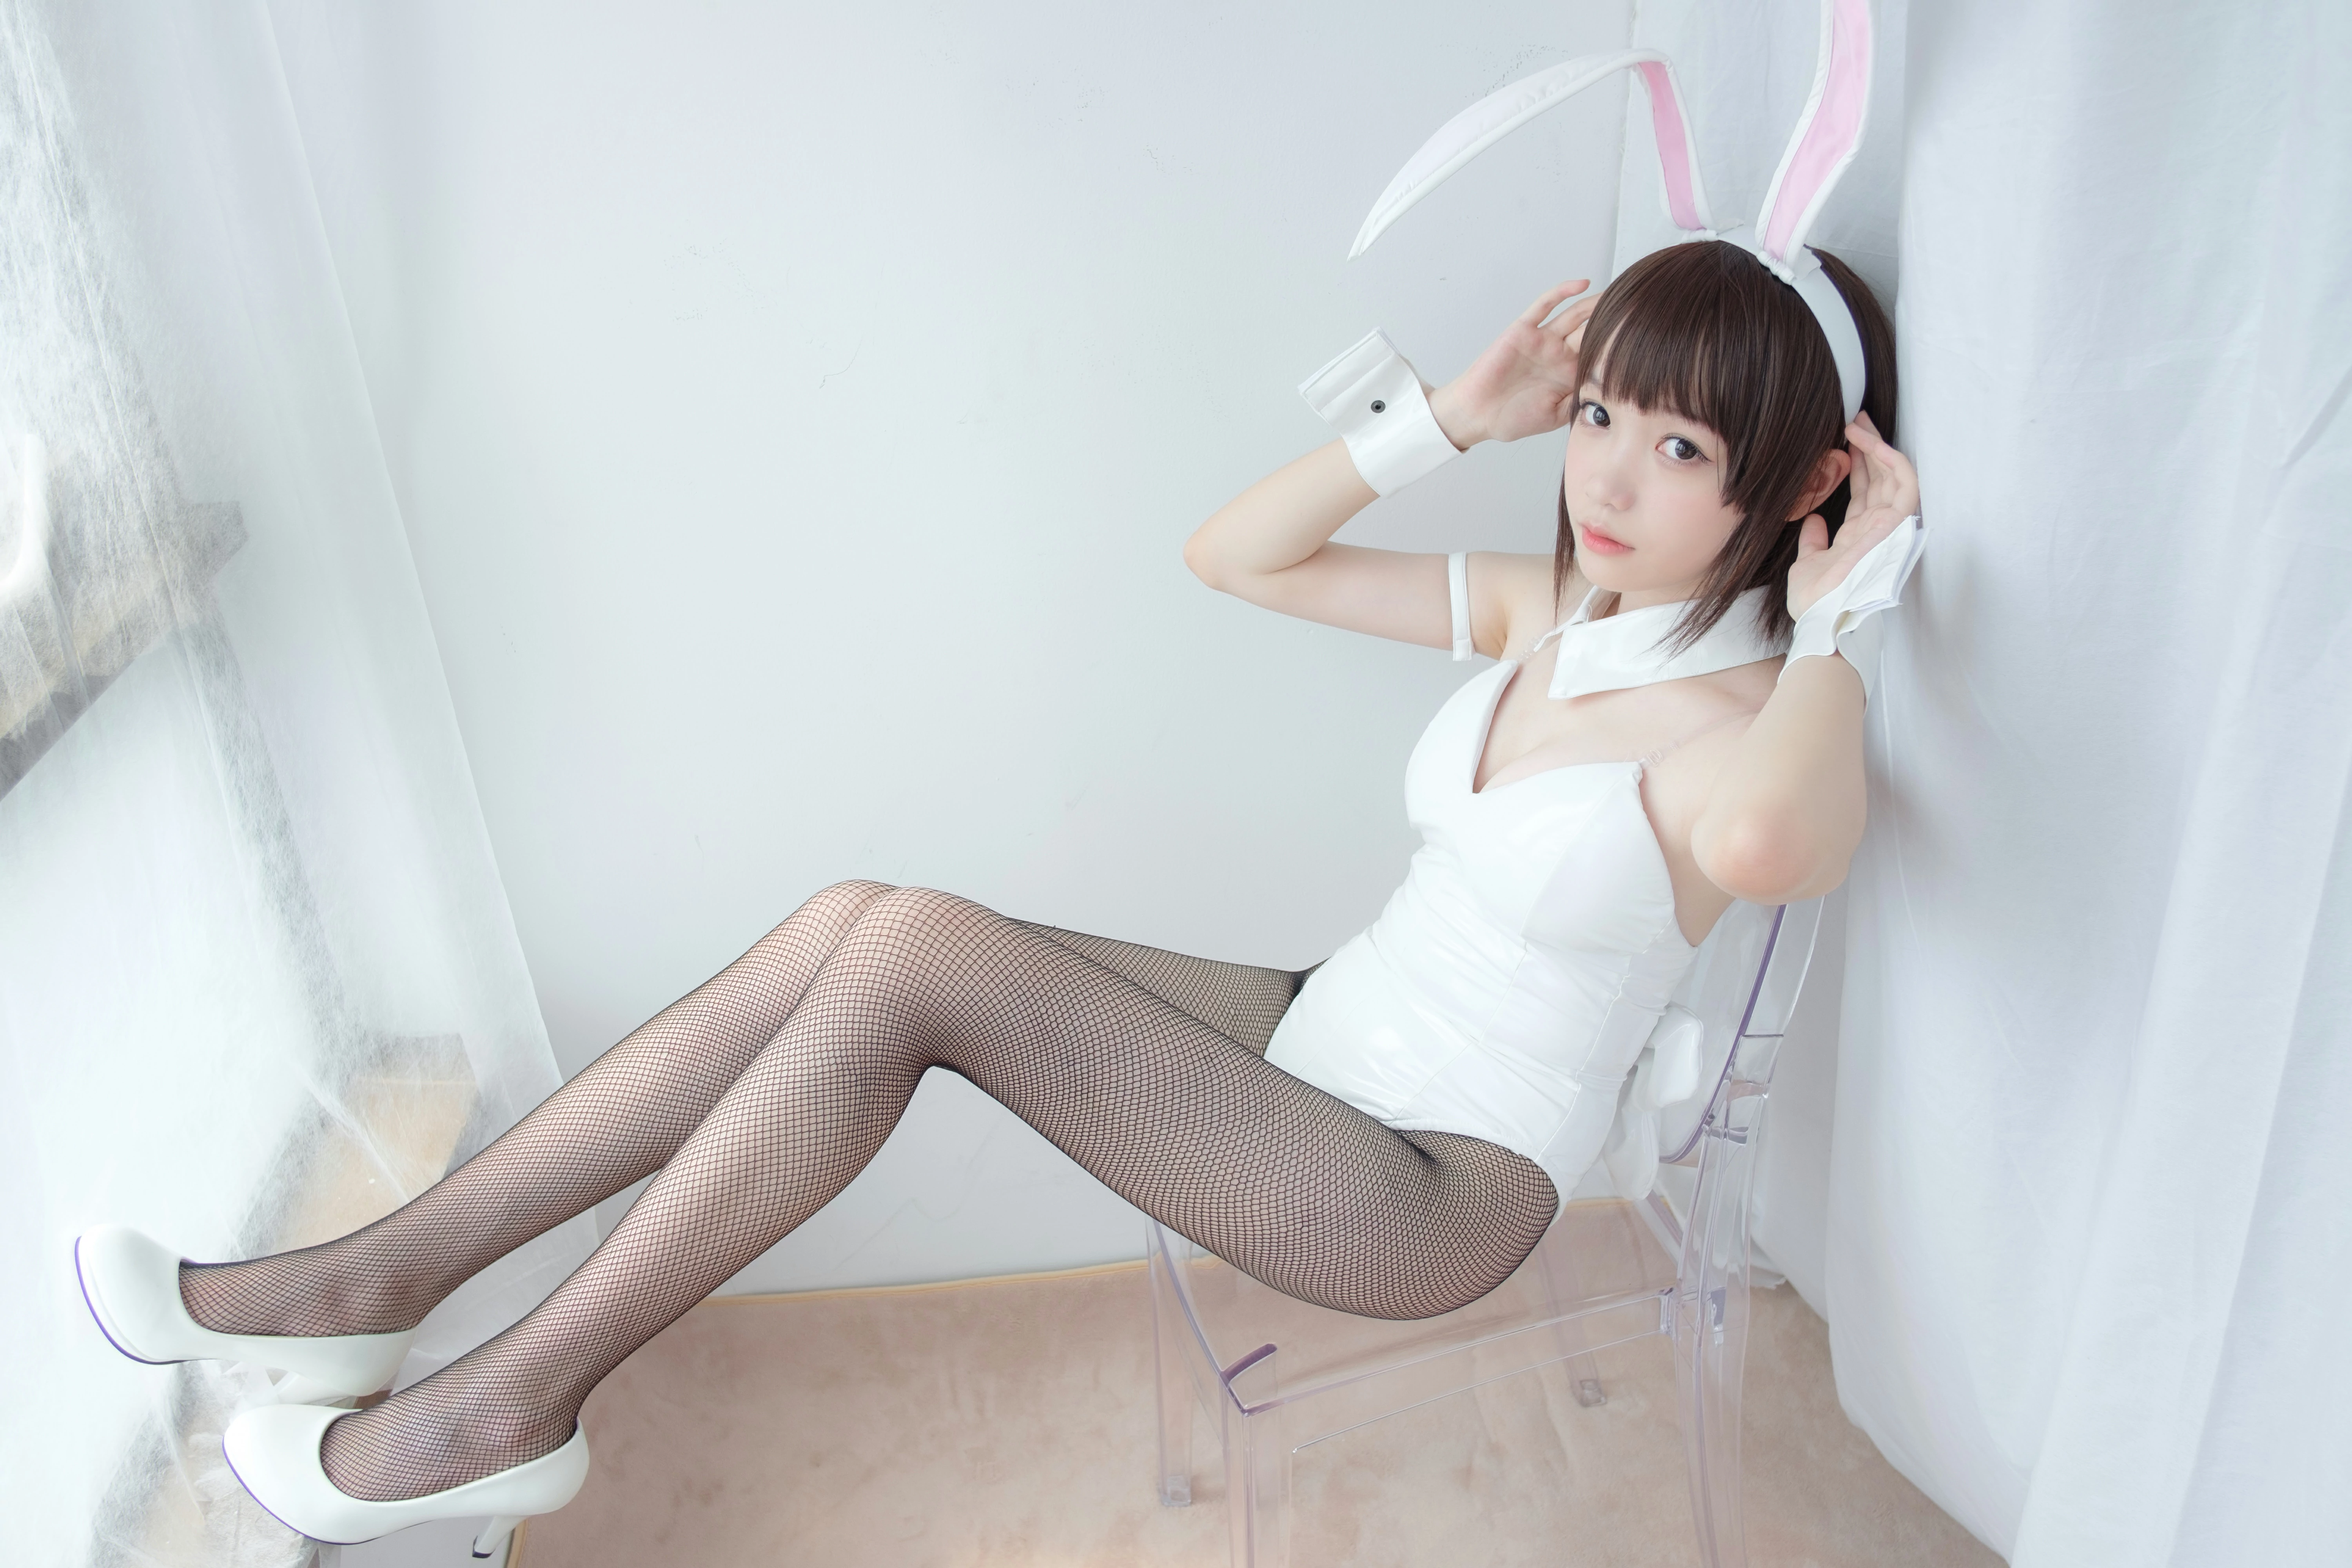 [森萝财团]LOVEPLUS-0001 性感小萝莉 情趣兔女郎制服内衣加黑色丝袜美腿私房写真集,